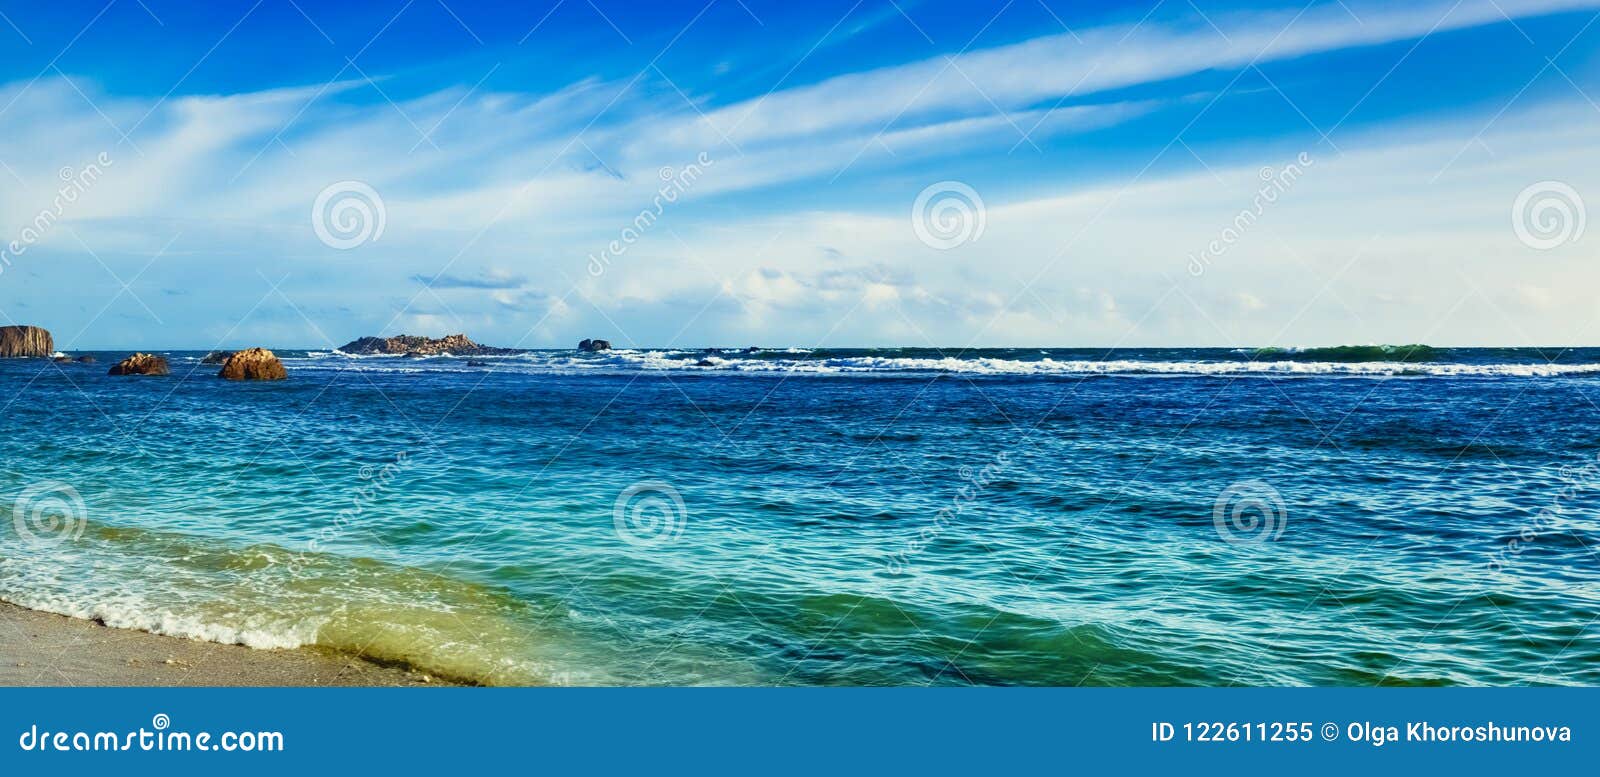 Le Paysage De L Ocean Indien Belle Vue D Une Mer Panorama Image Stock Image Du Nature Paradis